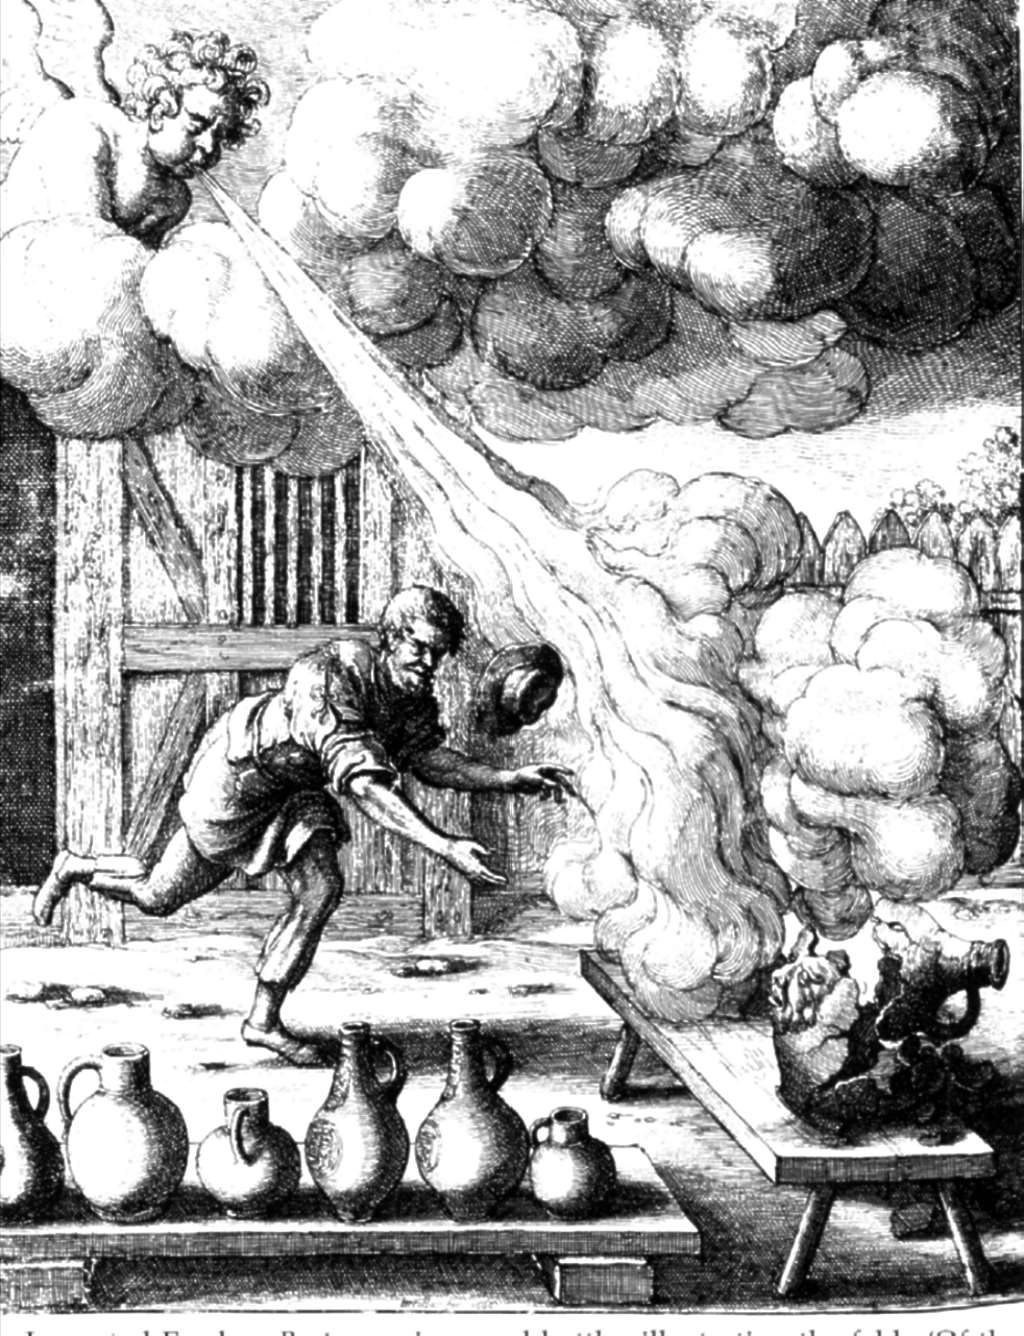 John Ogilby, 1668: Vom Wind und den irdenen Gefäßen.
Frechener Bartmannskrüge wurden in großen Mengen nach England exportiert. 